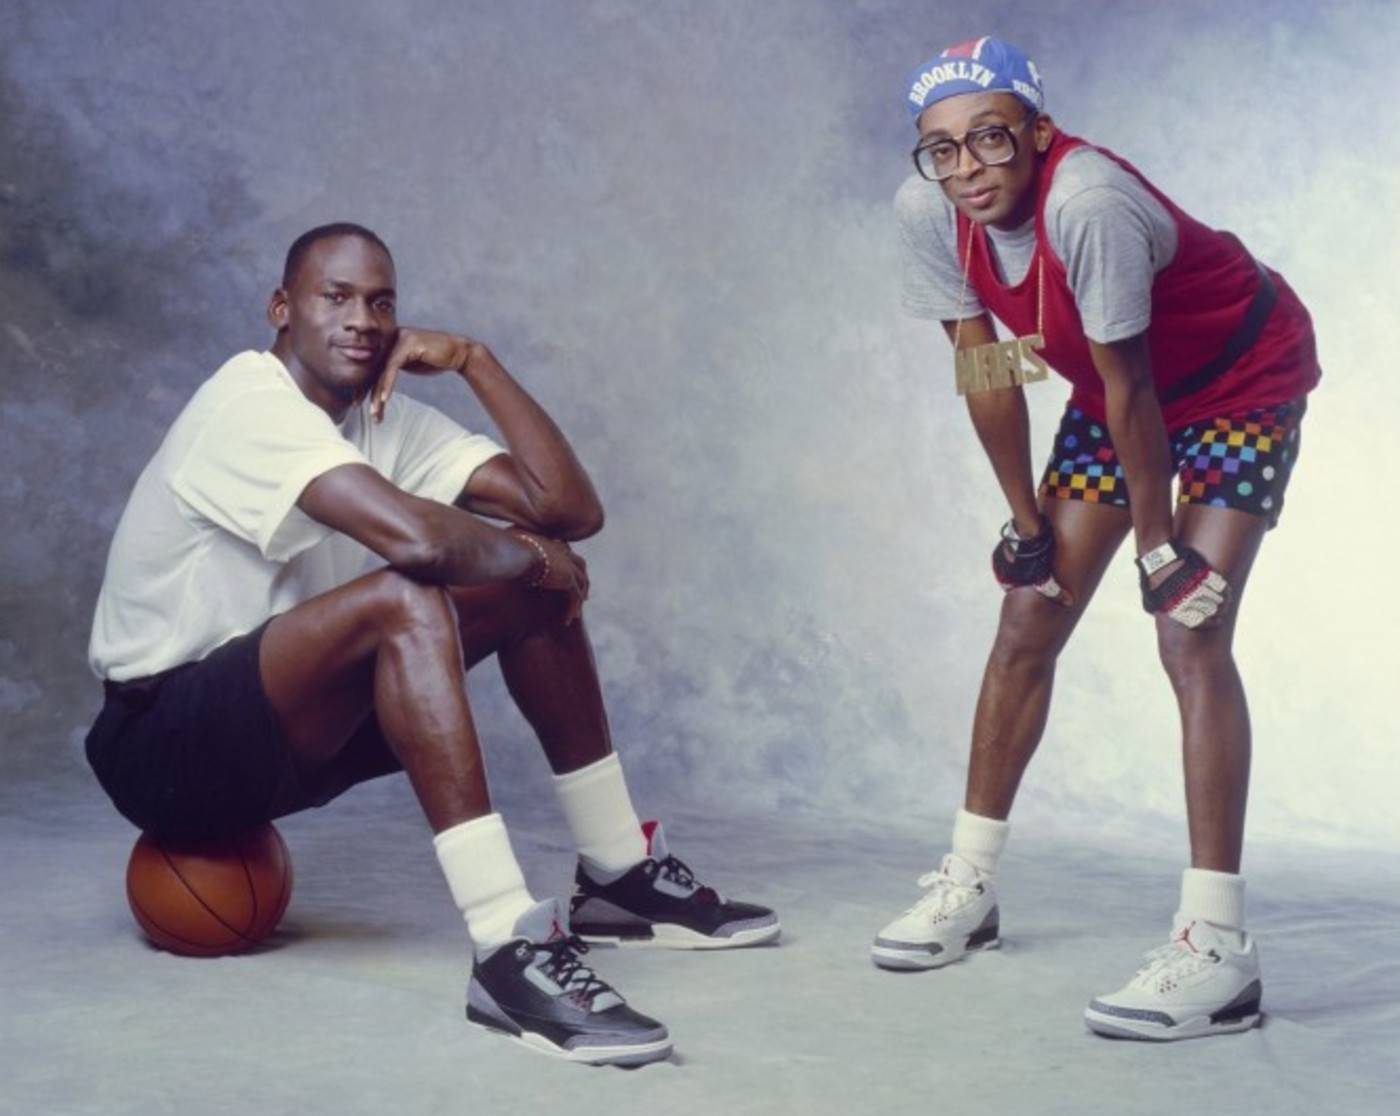 Michael Jordan et le réalisateur Spike Lee sur le tournage d'une publicité pour la Air Jordan III en 1988 © Air Jordan